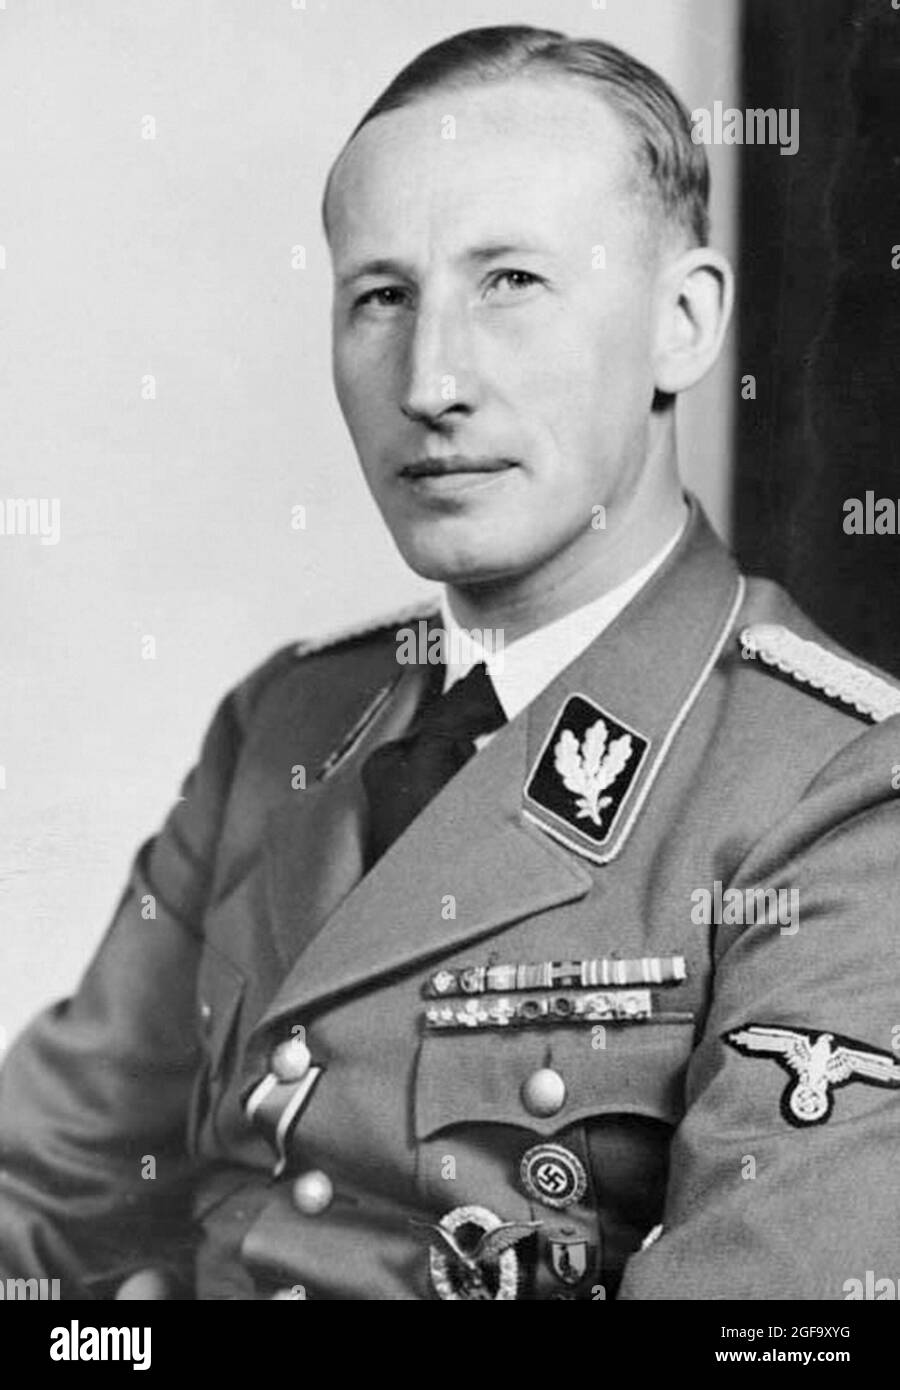 Ein Porträt des Nazi- und SS-Führers Reinhard Heydrich. Er war Leiter der Gestapo, des Sicherheitsdienstes (SD) und des Reichssicherheitshauptamtes (RSHA) und gilt als Chefarchitekt des Holocaust. Er wurde 1942 ermordet. Quelle: Deutsches Bundesarchiv Stockfoto